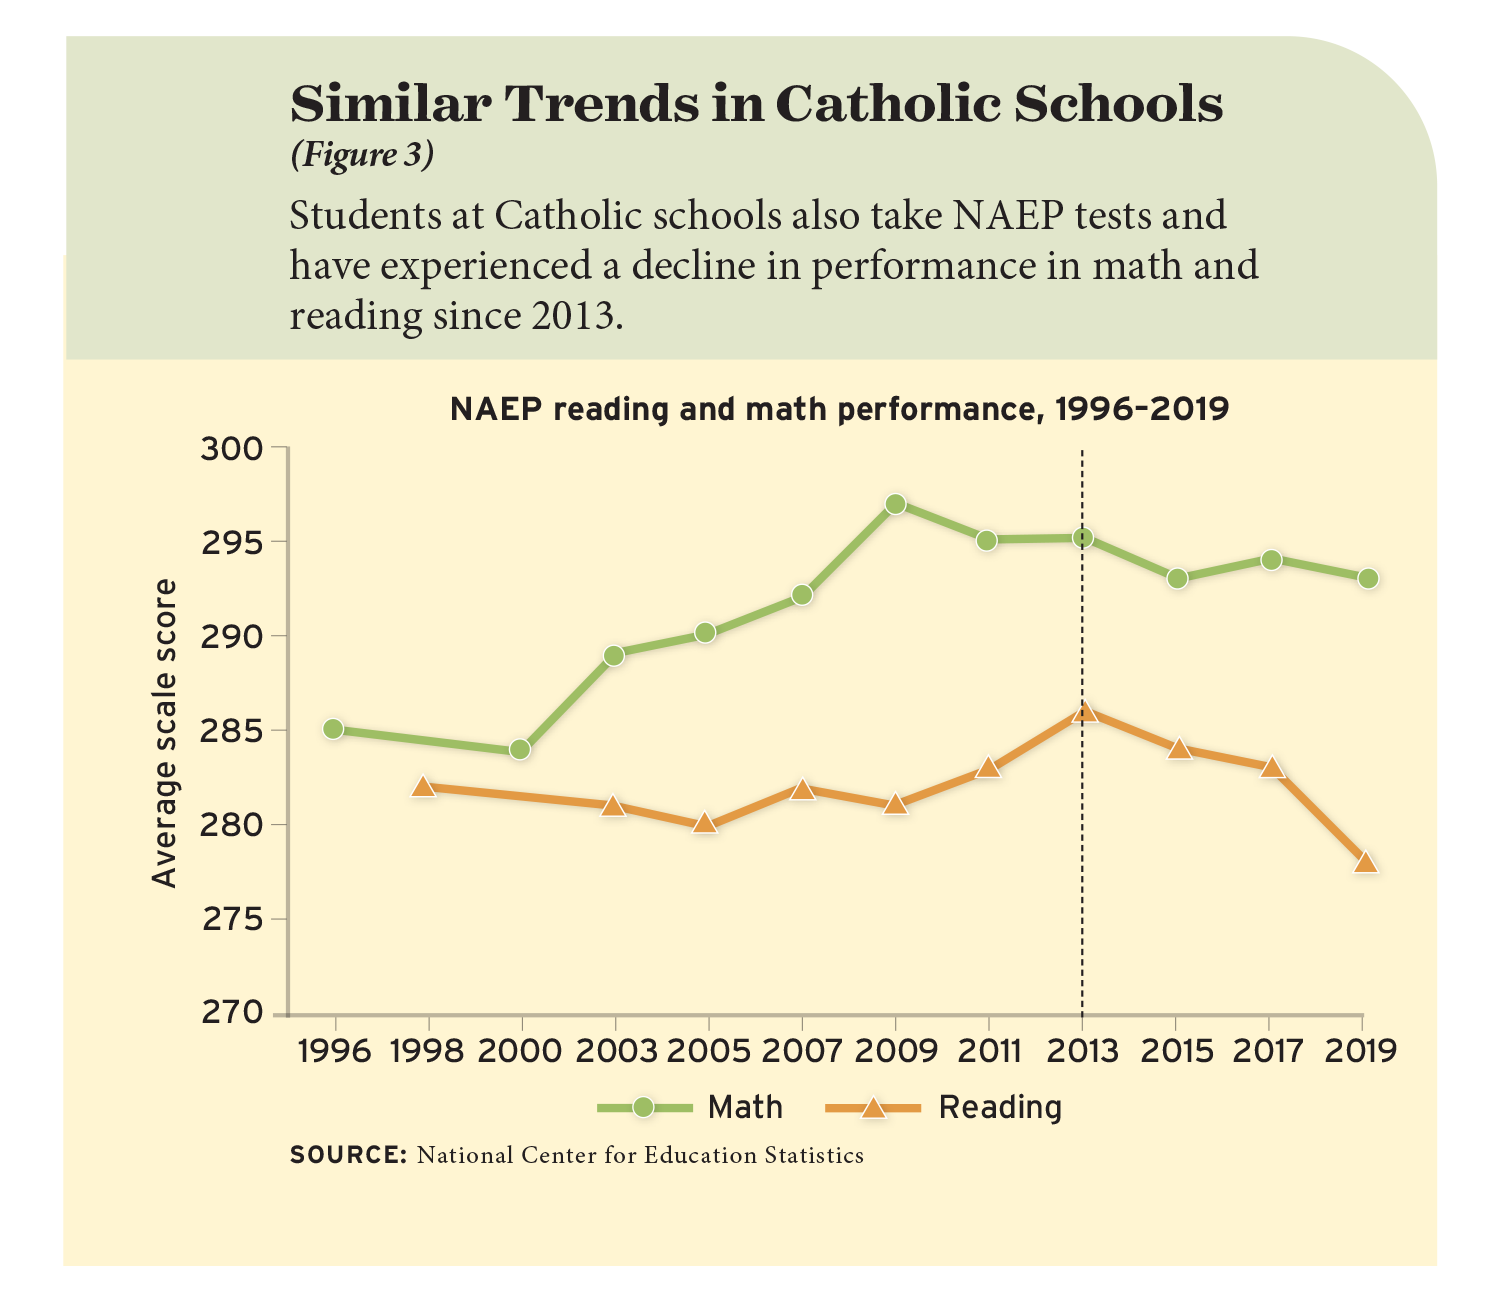 Figure 3: Similar Trends in Catholic Schools